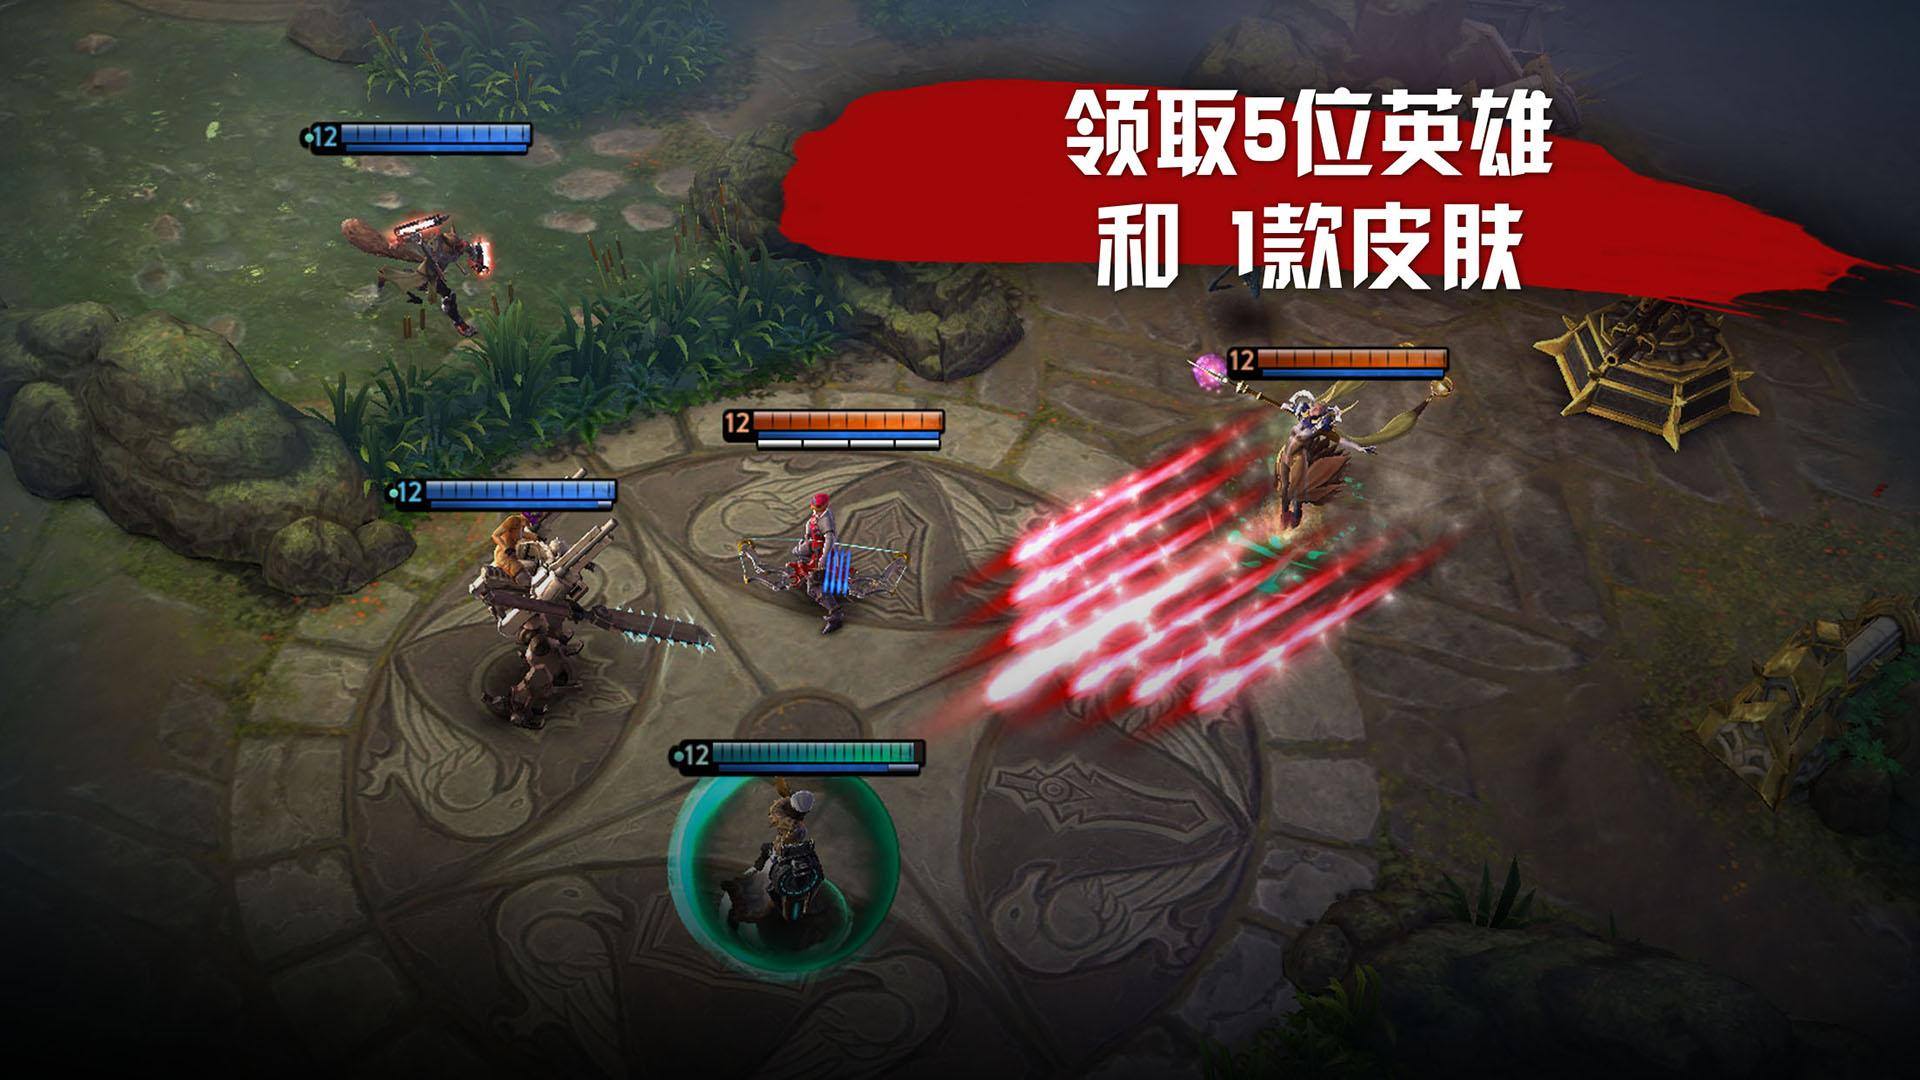 5 tựa game mobile MOBA hot nhất hiện nay tại thị trường Trung Quốc - Ảnh 3.